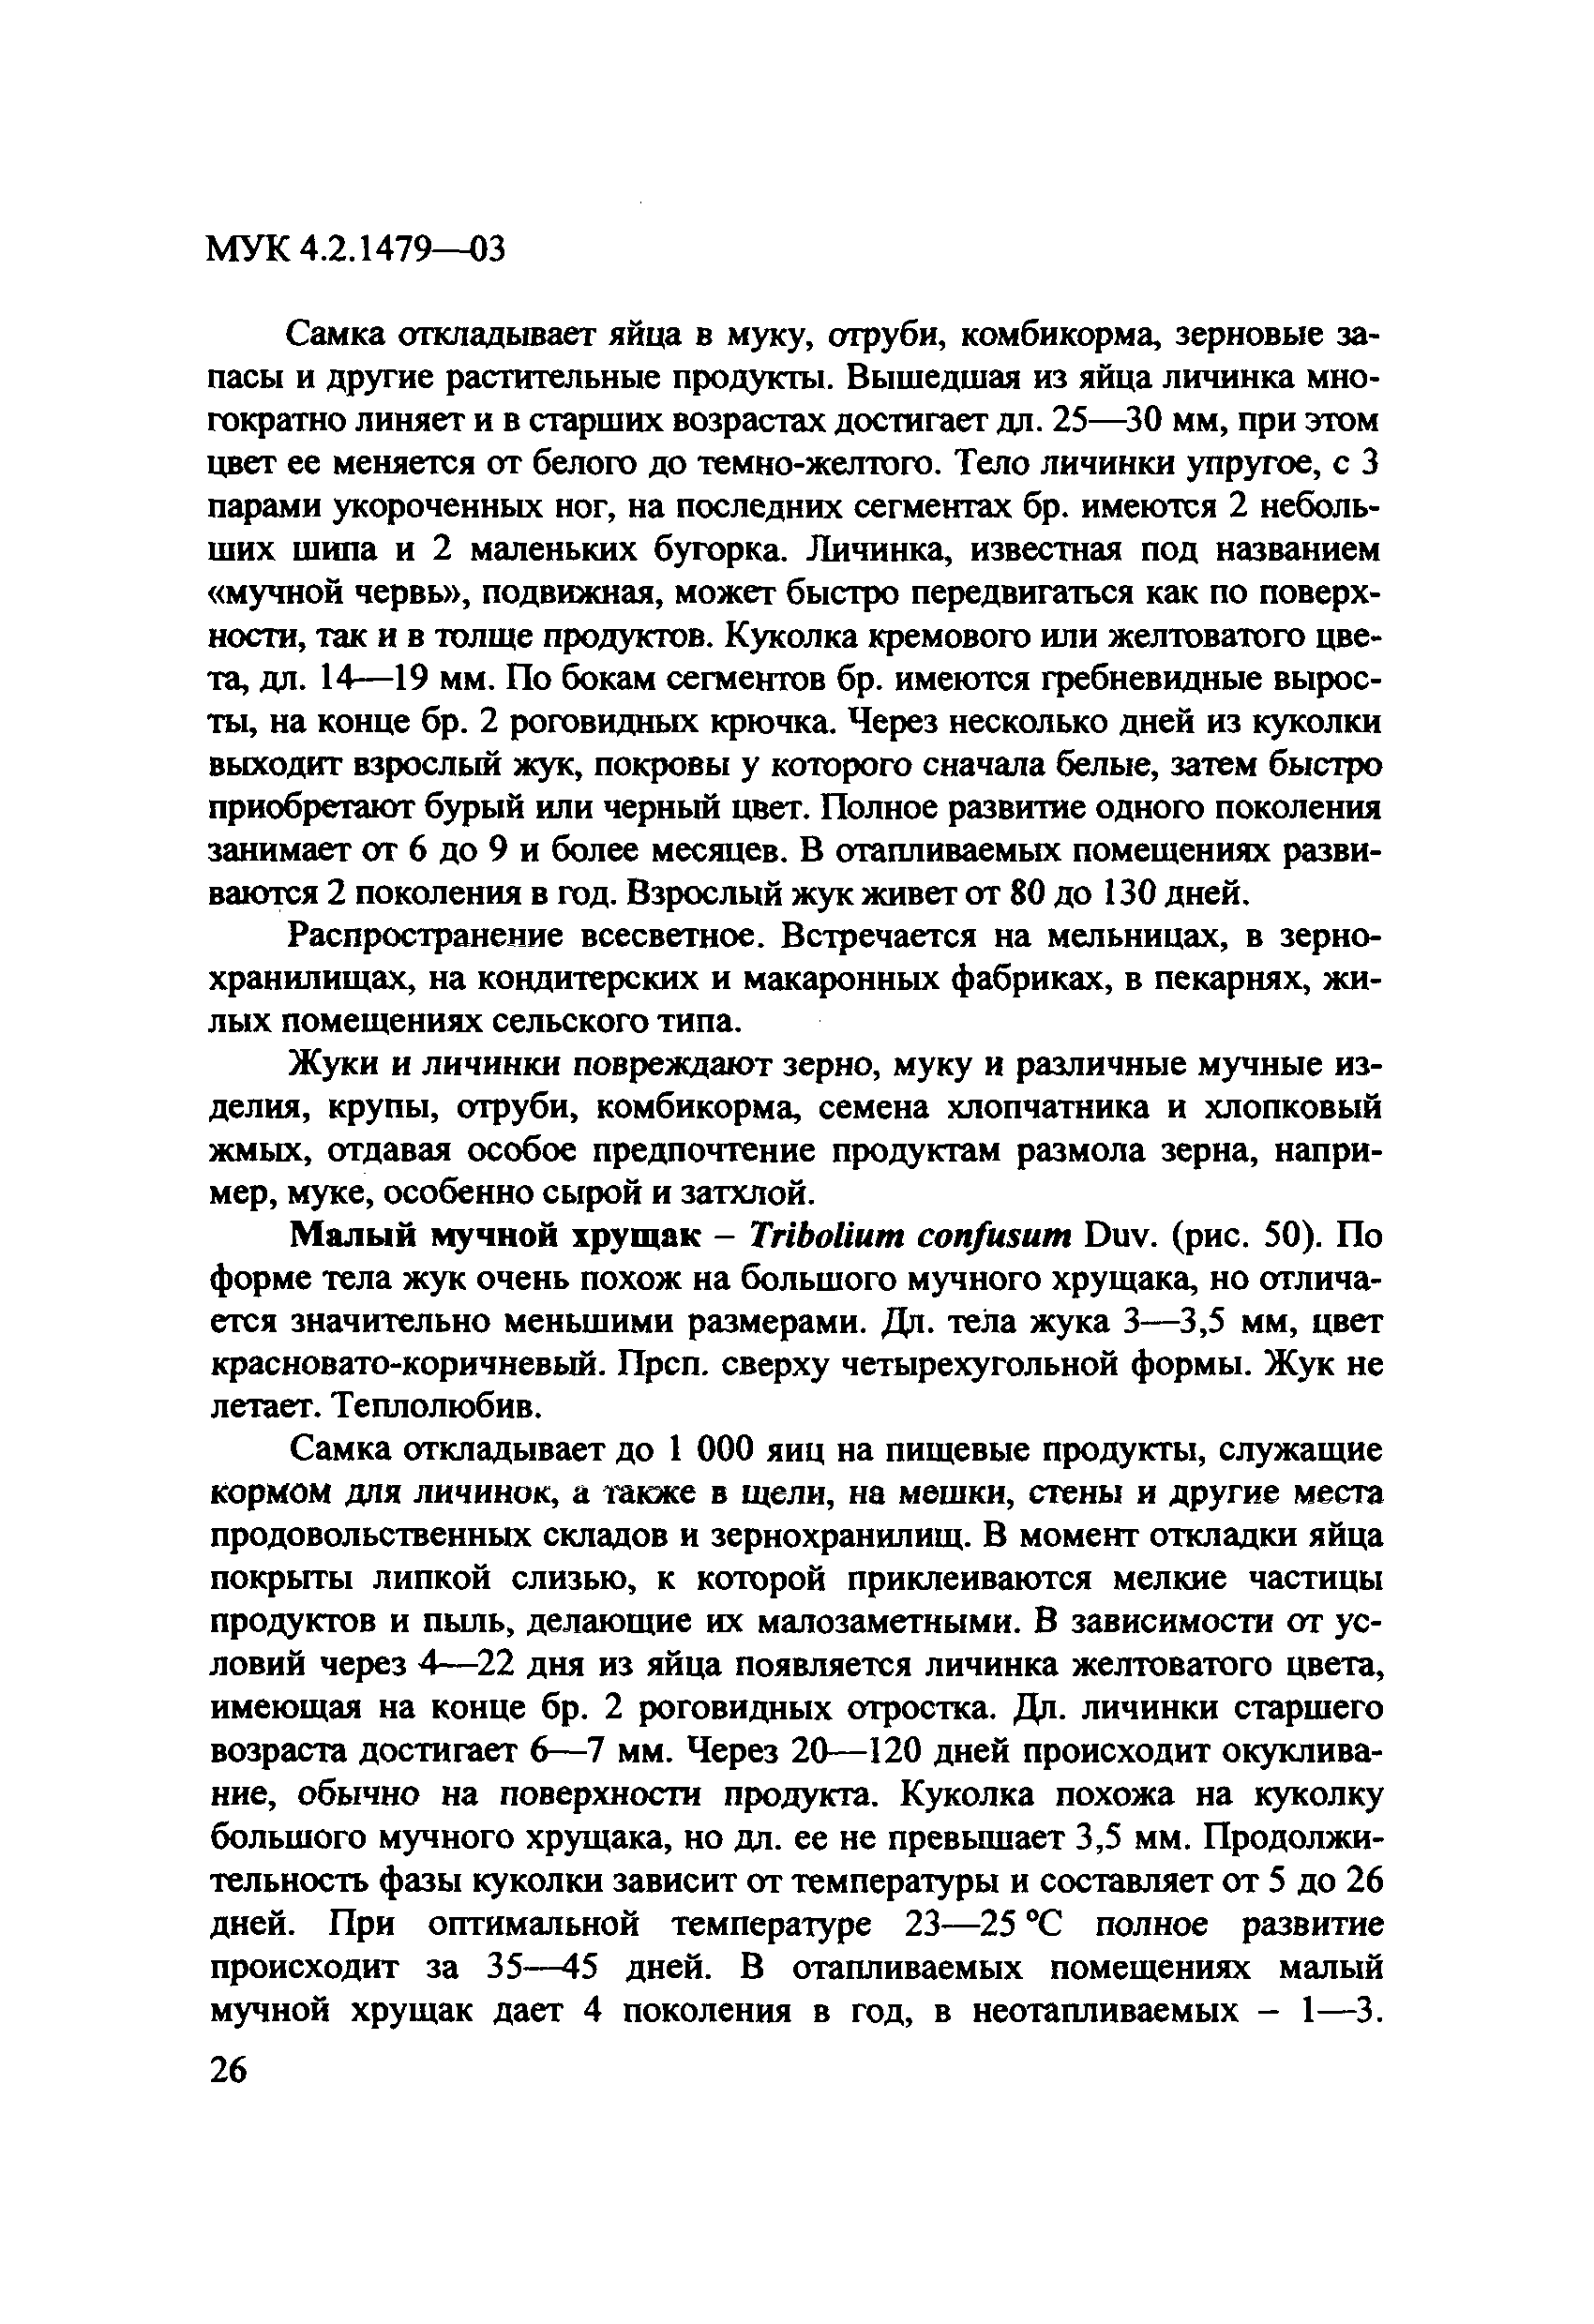 МУК 4.2.1479-03